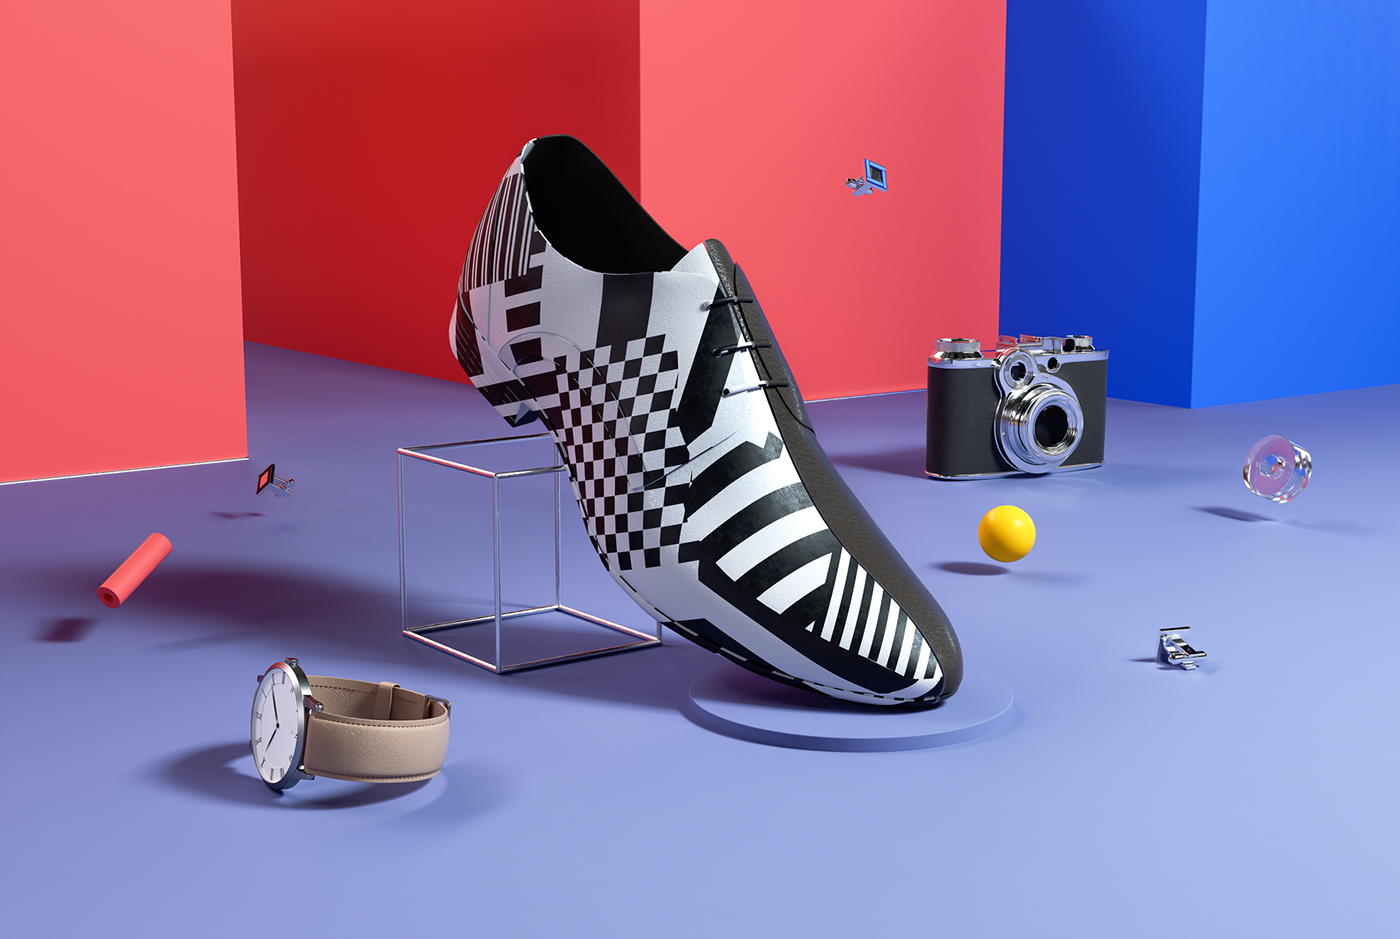 set design  Fashion  Nike adidas octane CG CGI art product pattern